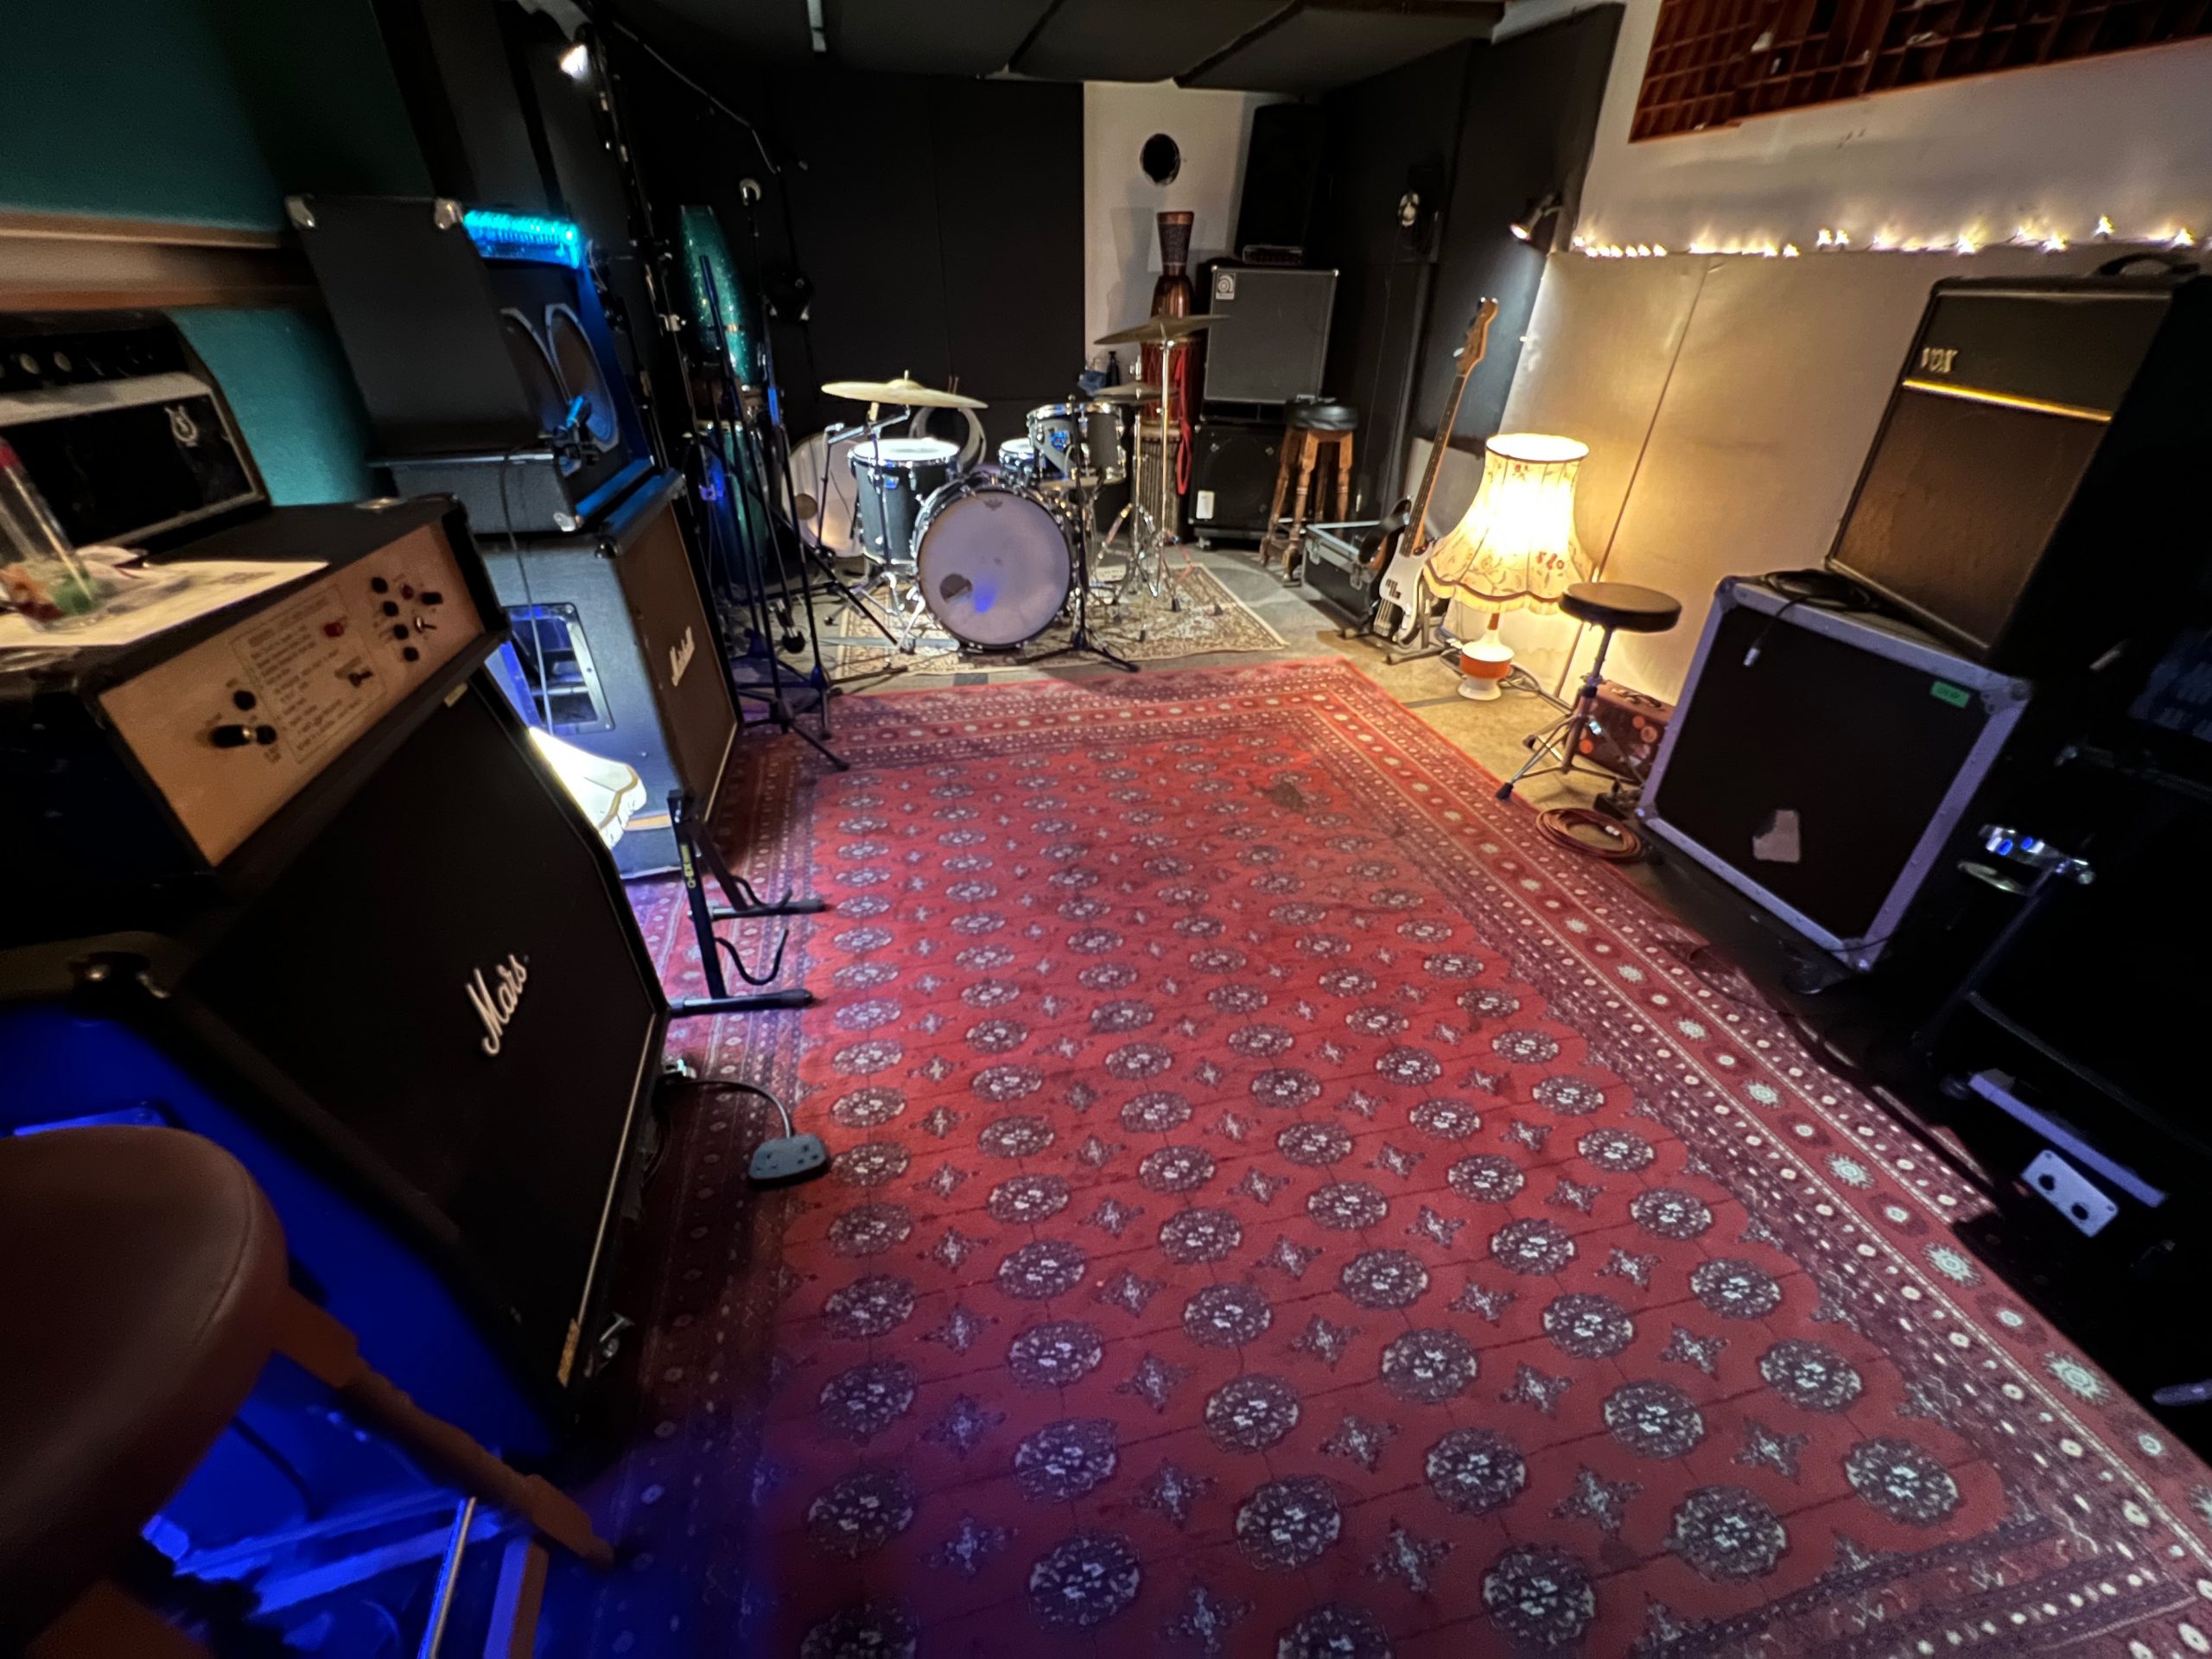 Hicaz Recording Studio